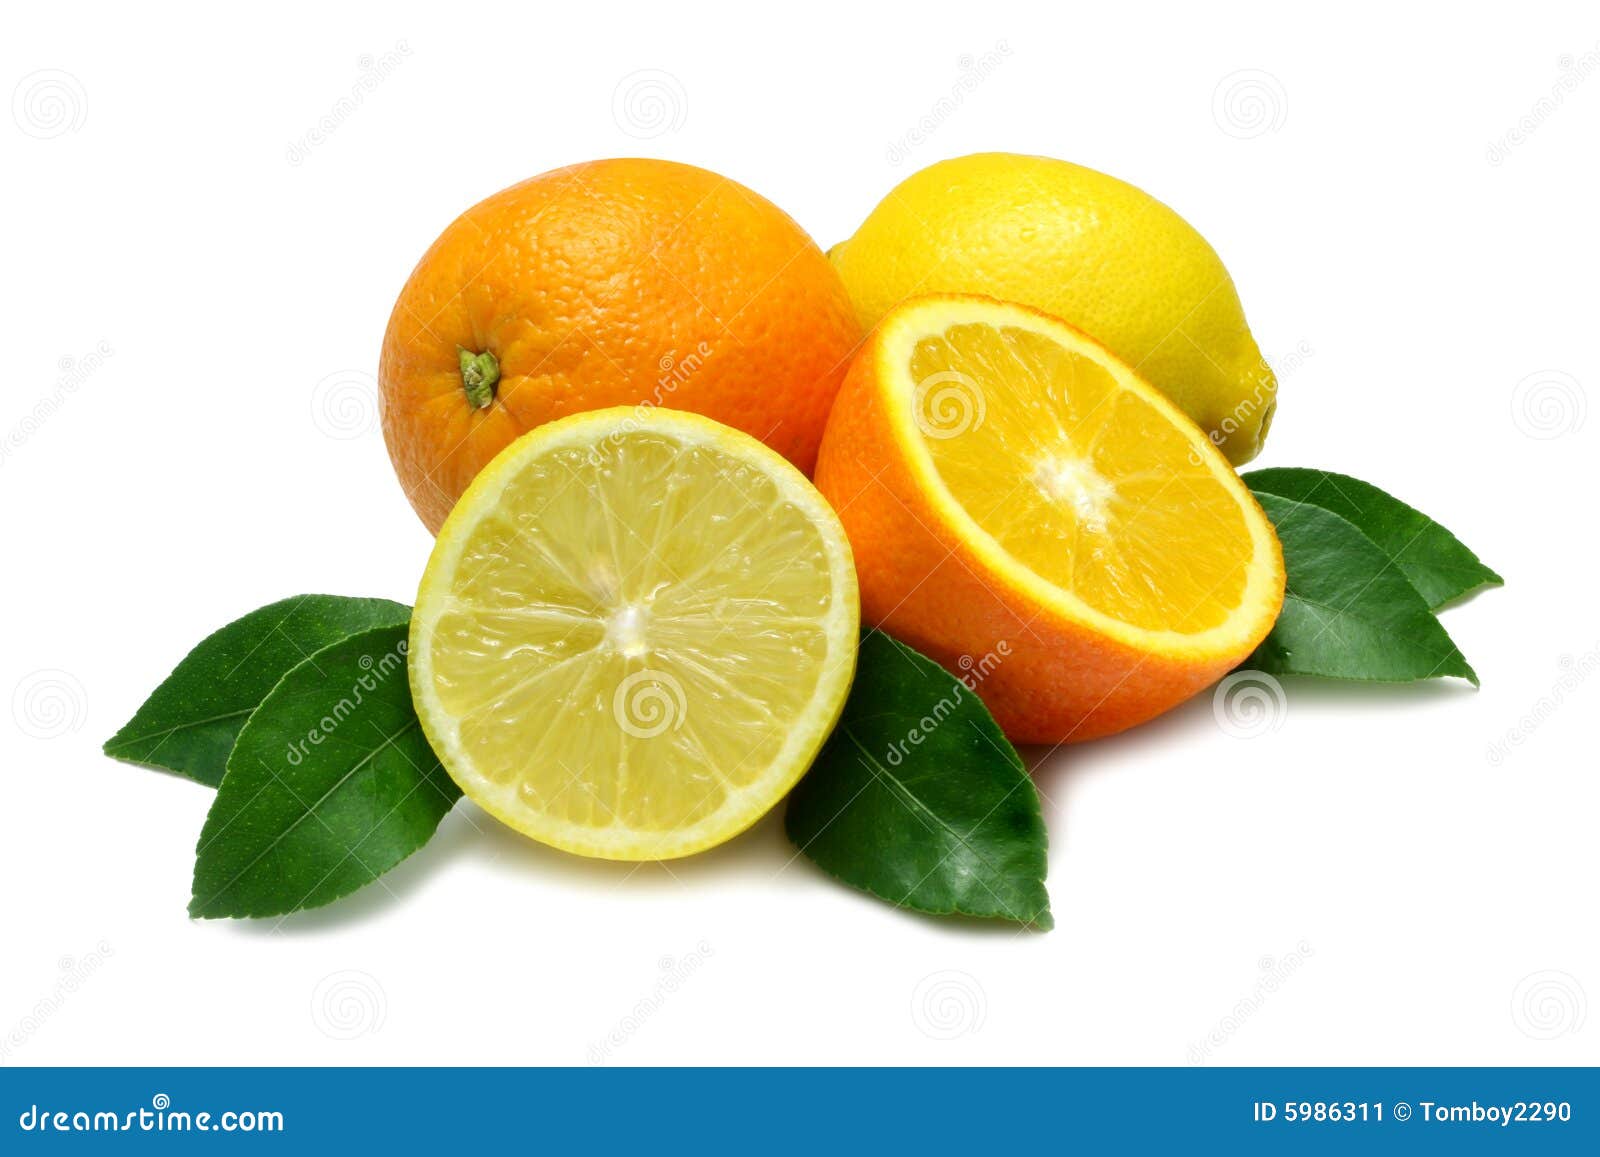 Orange And Lemon Stock Image - Image: 5986311